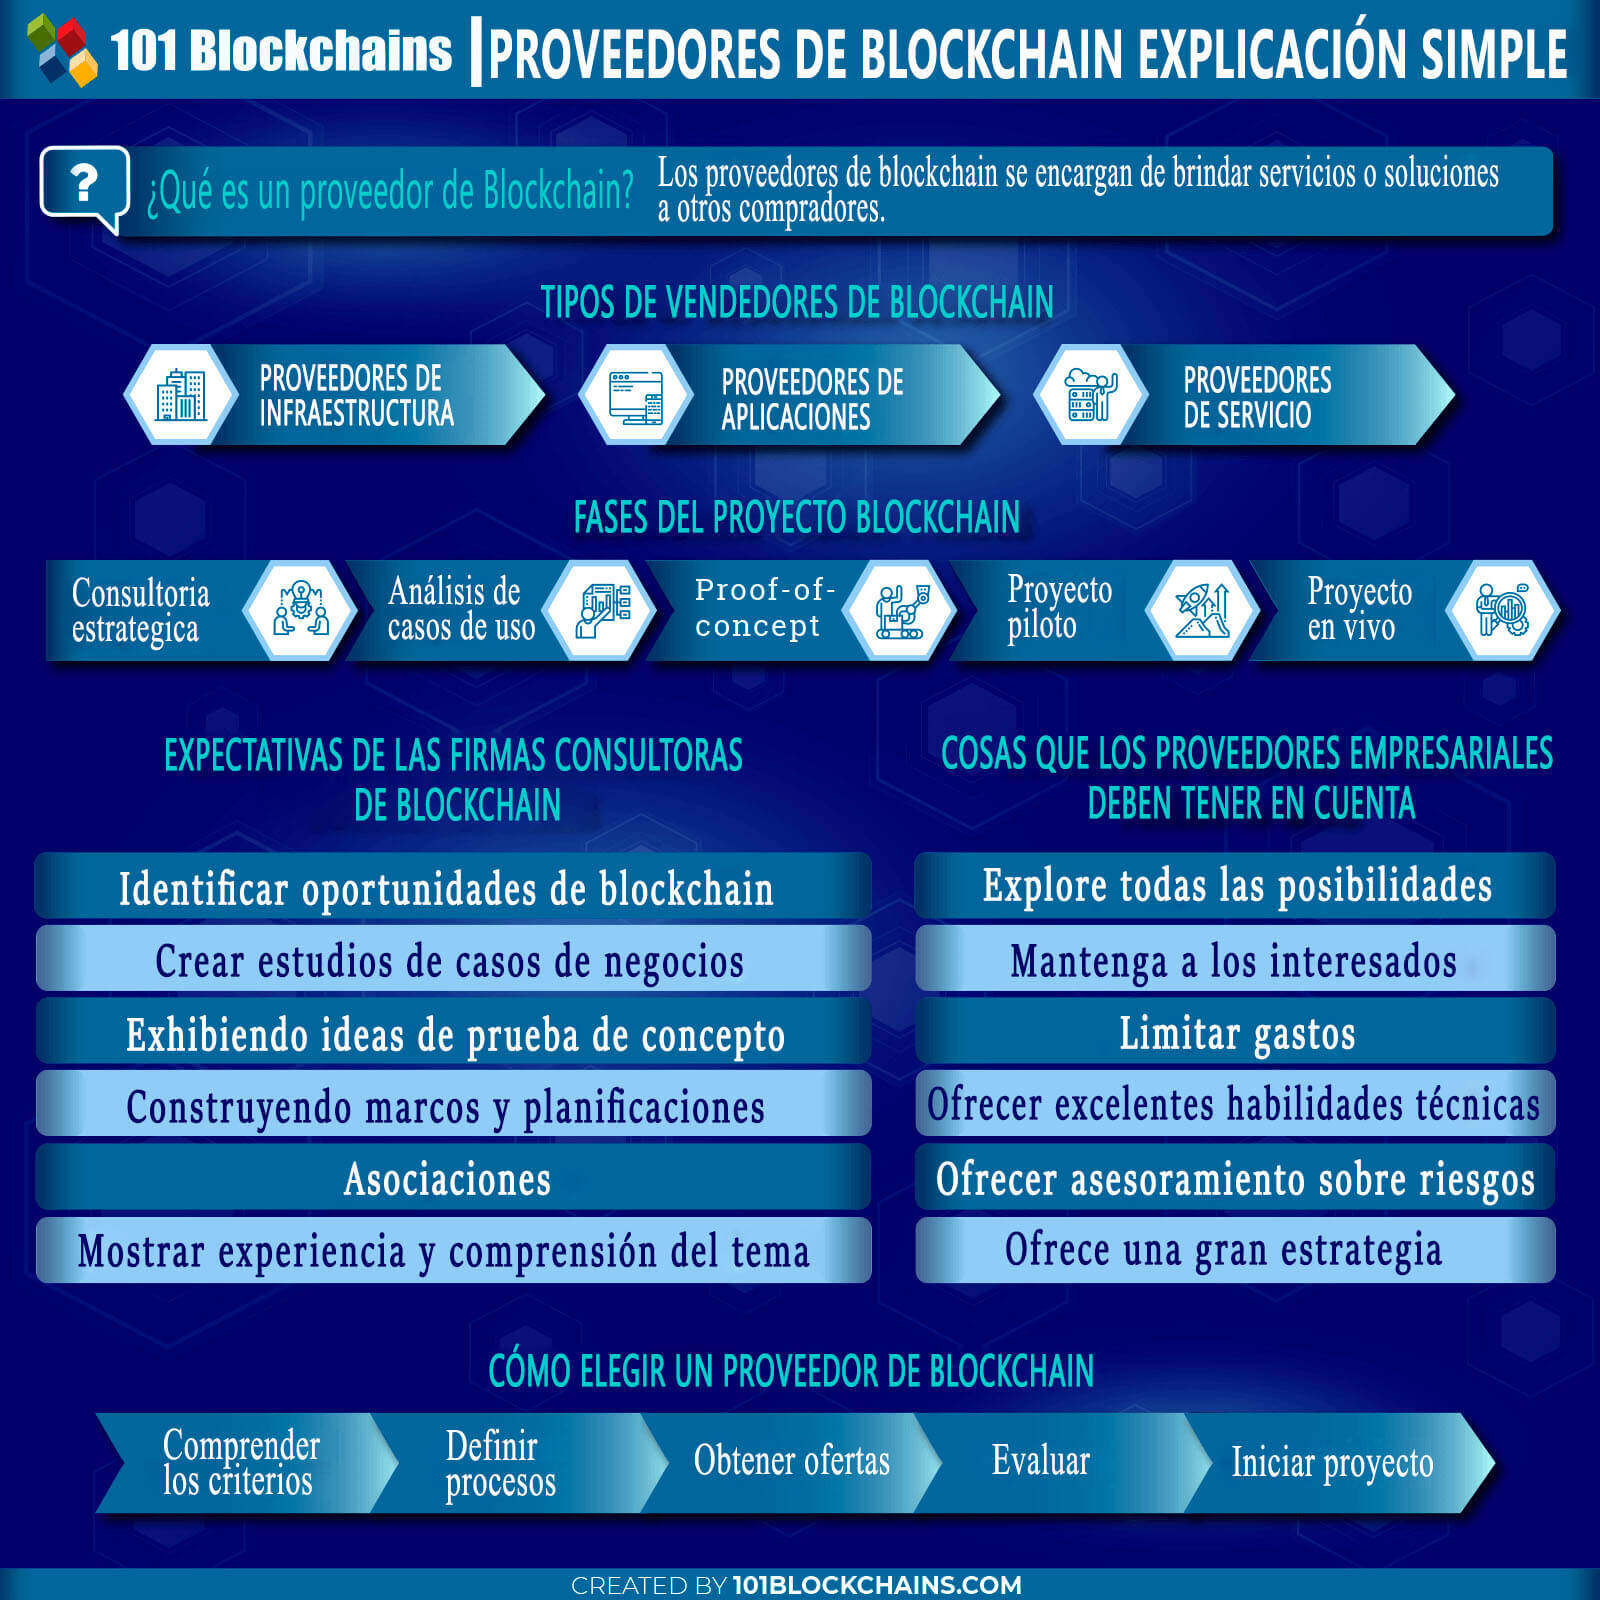 PROVEEDORES DE BLOCKCHAIN EXPLICACIÓN SIMPLE